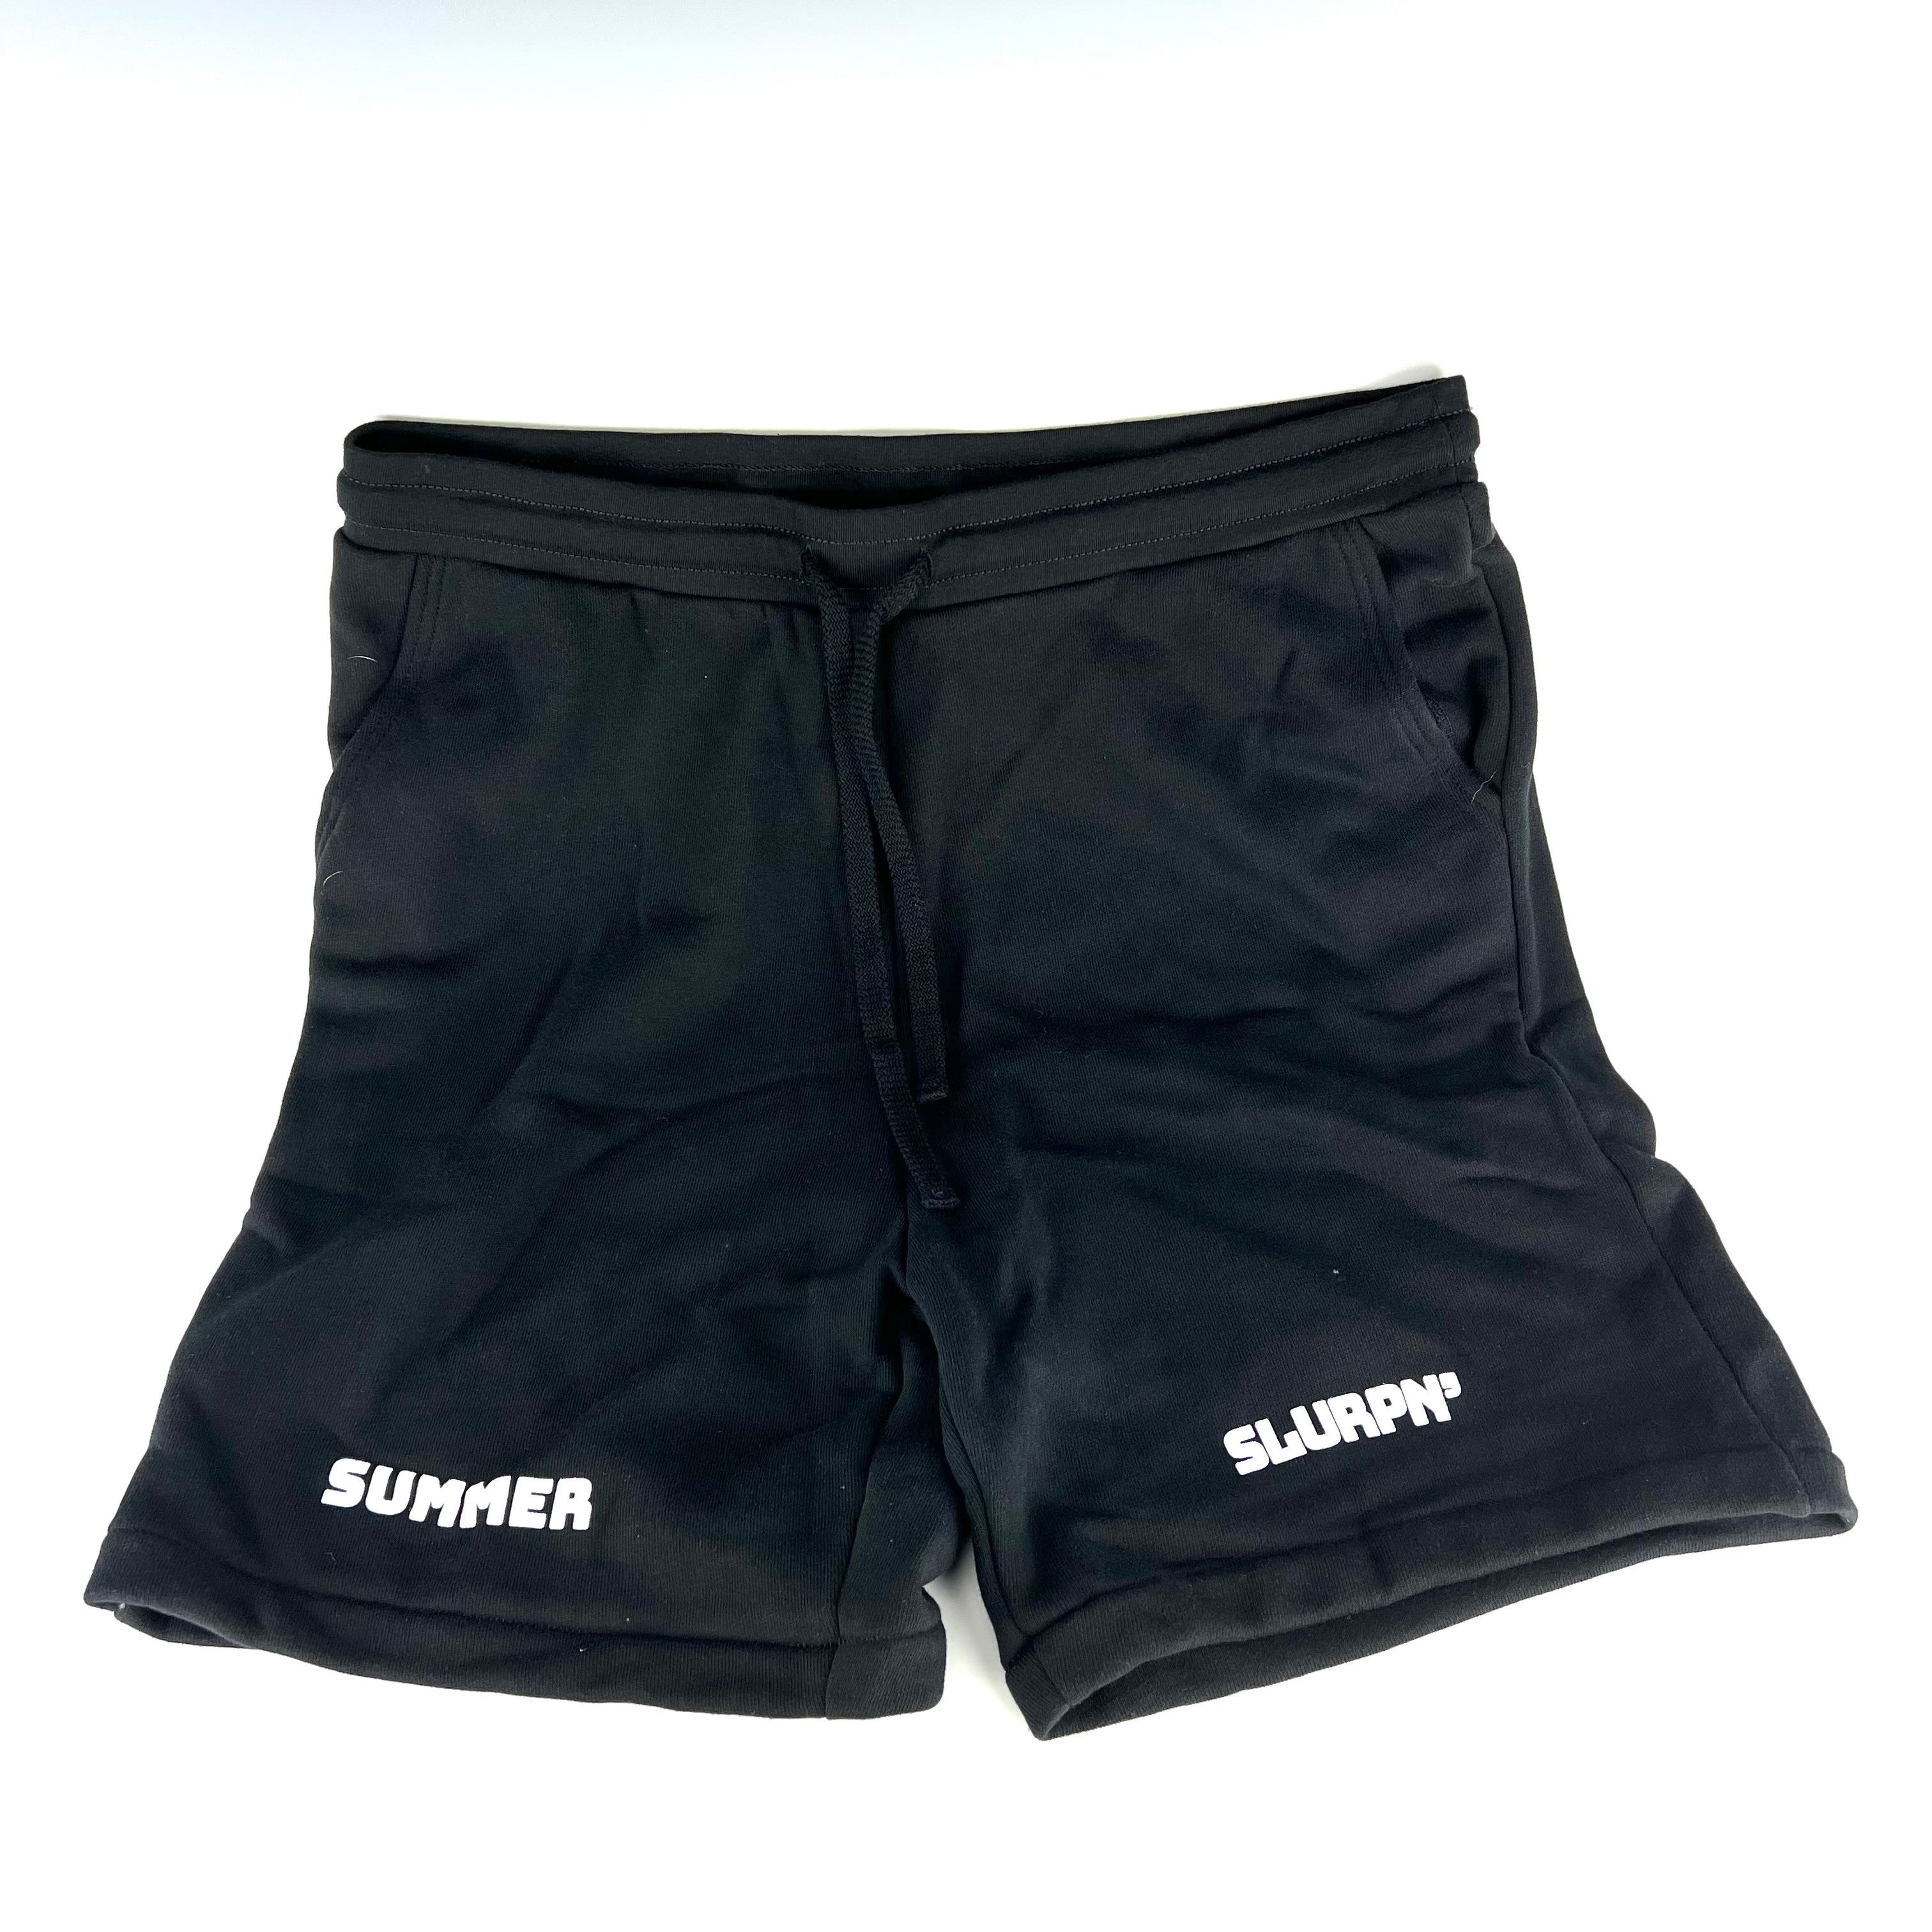 Summer Slurpn' 4 Shorts